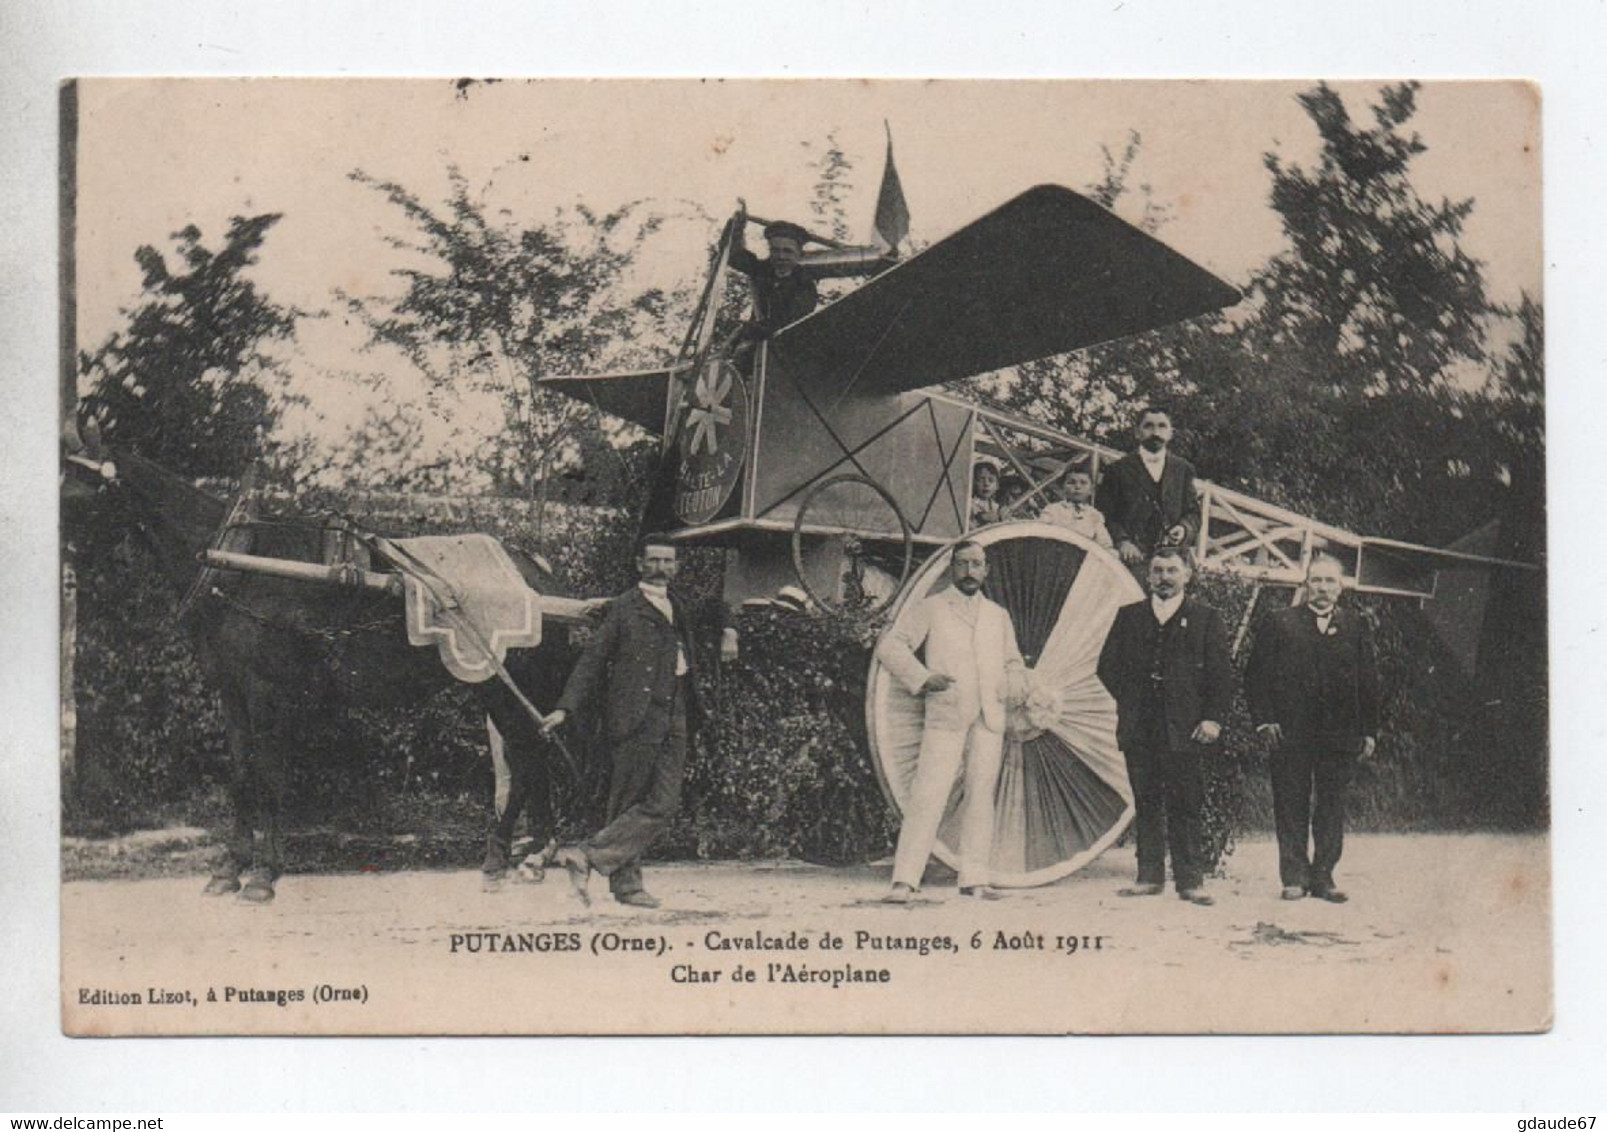 CAVALCADE De PUTANGES (61) - CHAR DE L'AEROPLANE 6 AOUT 1911 - Putanges